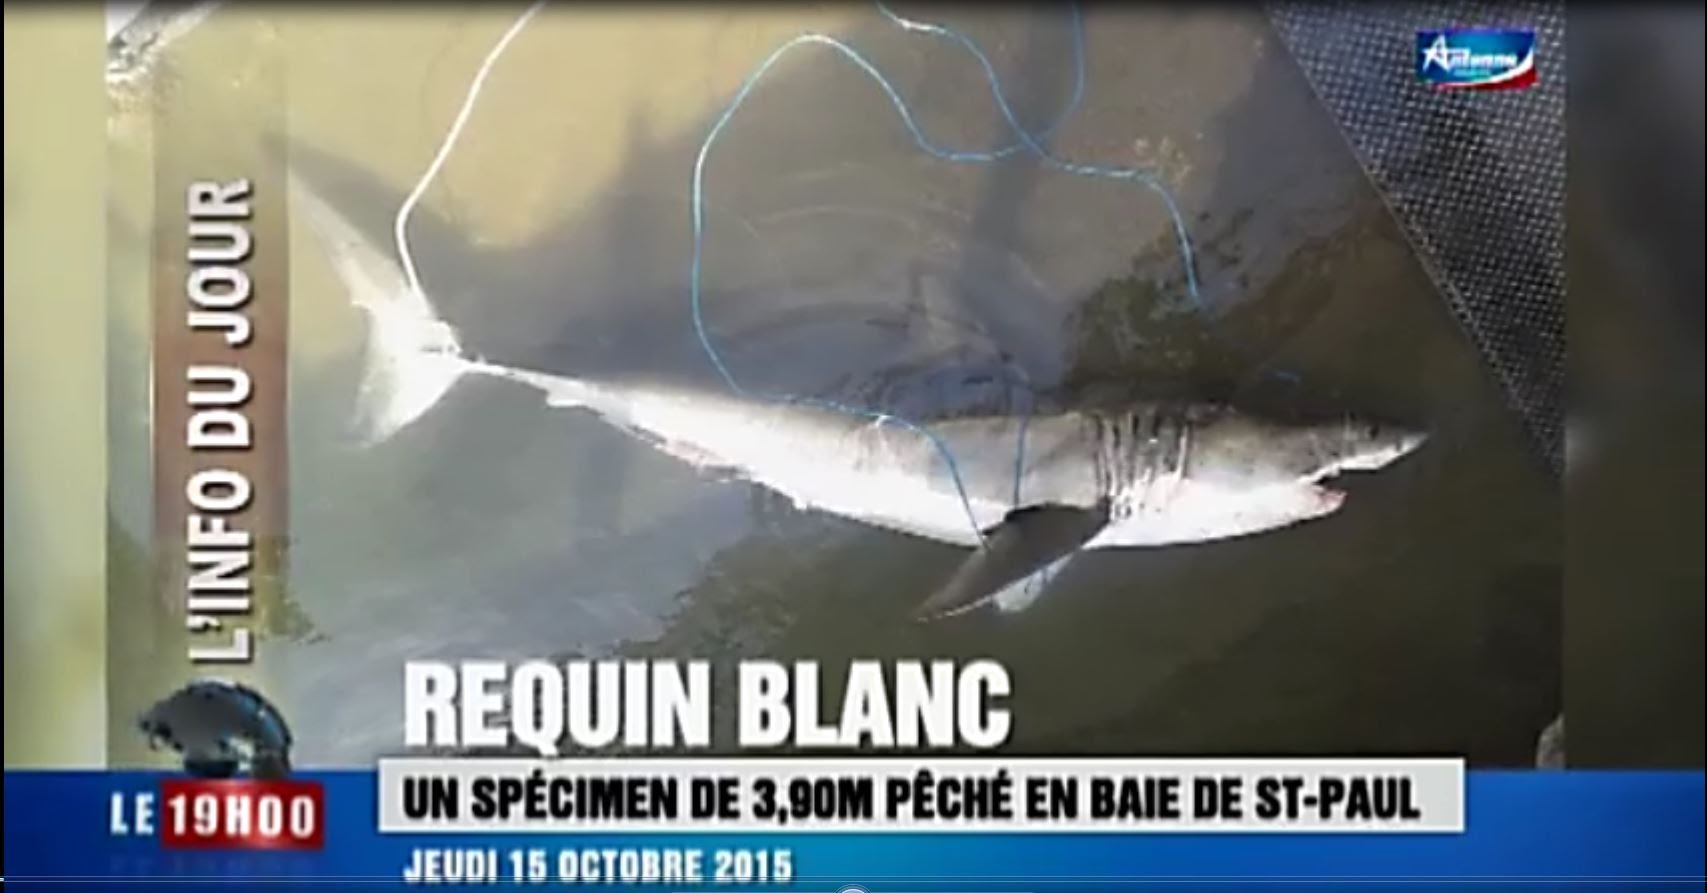 Le requin blanc pêché à la Réunion crée la polémique